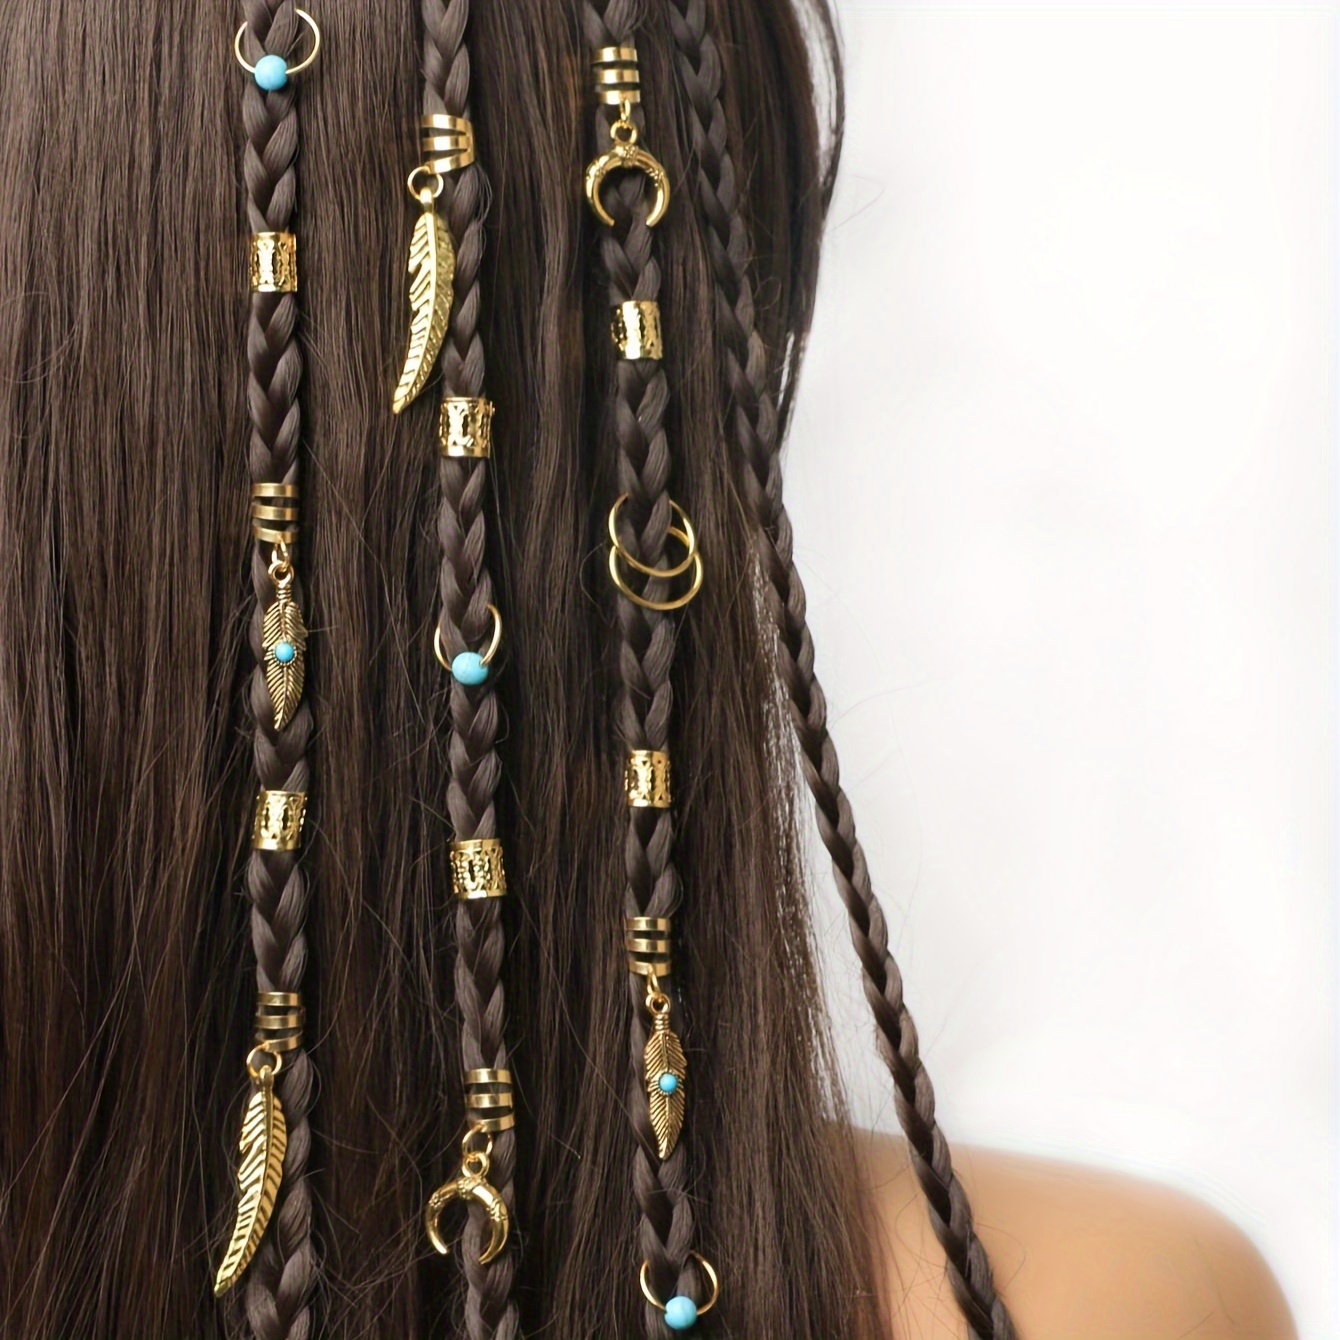 152 piezas de joyería de vikingos para el cabello, cuentas de tubo de runas  nórdicas, anillos de puños de metal, accesorios para el cabello para – Yaxa  Colombia